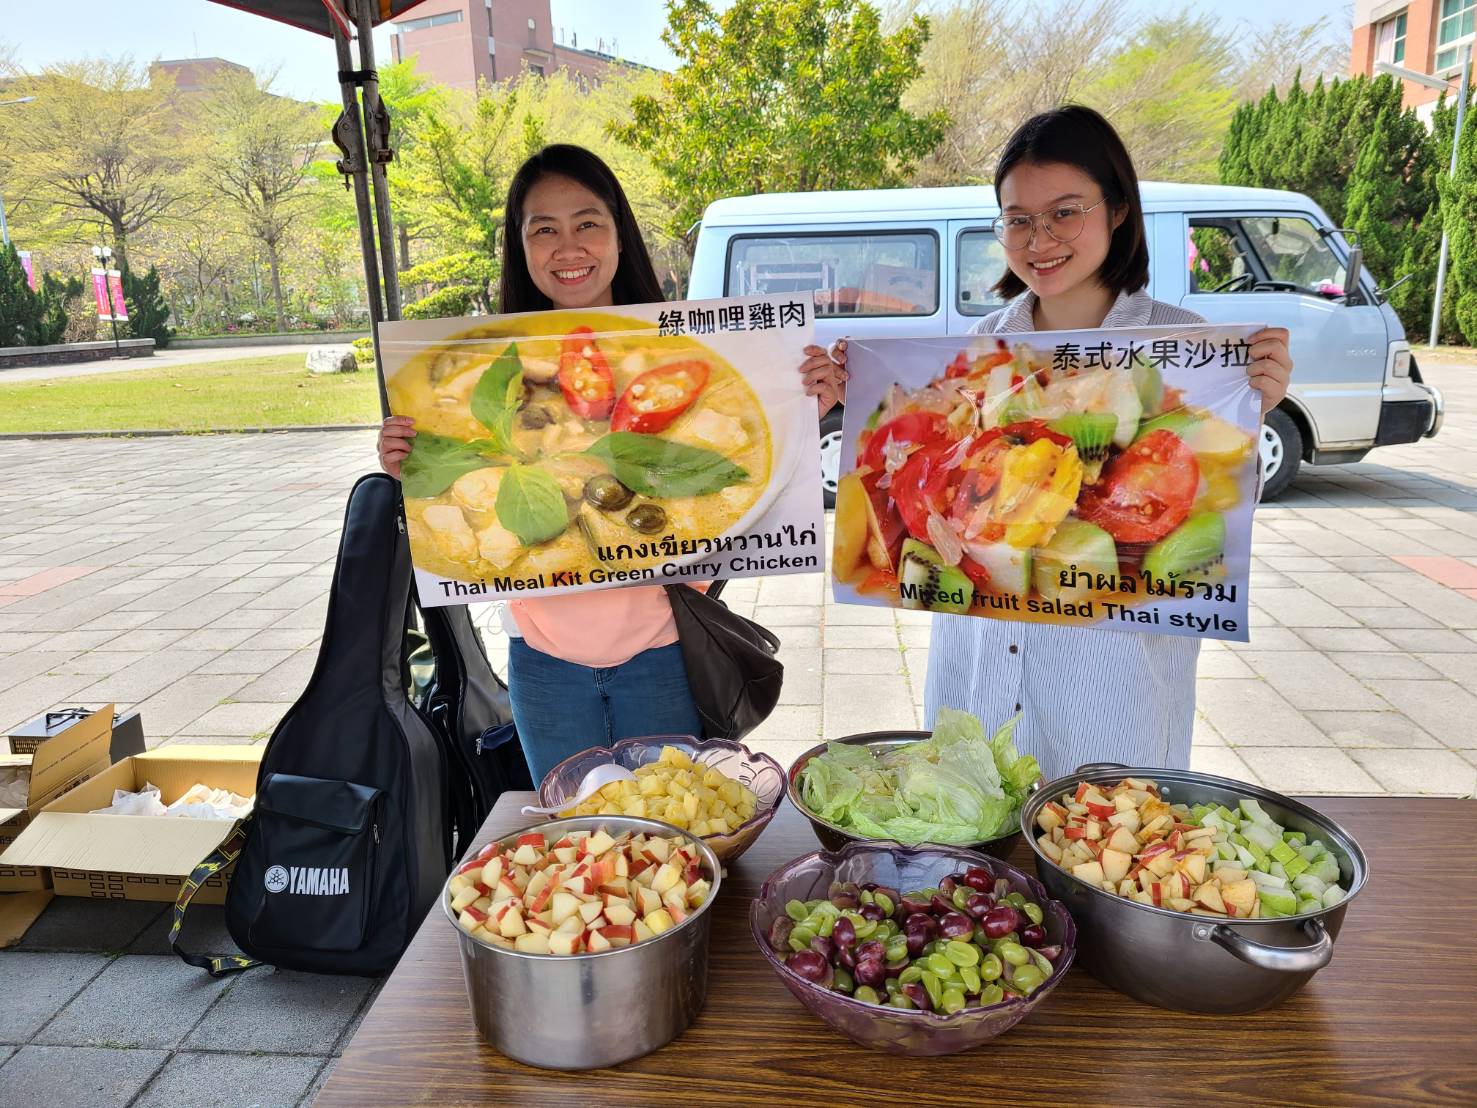 亞大的泰國學生準備了泰式水果沙拉、綠咖哩雞肉分享。